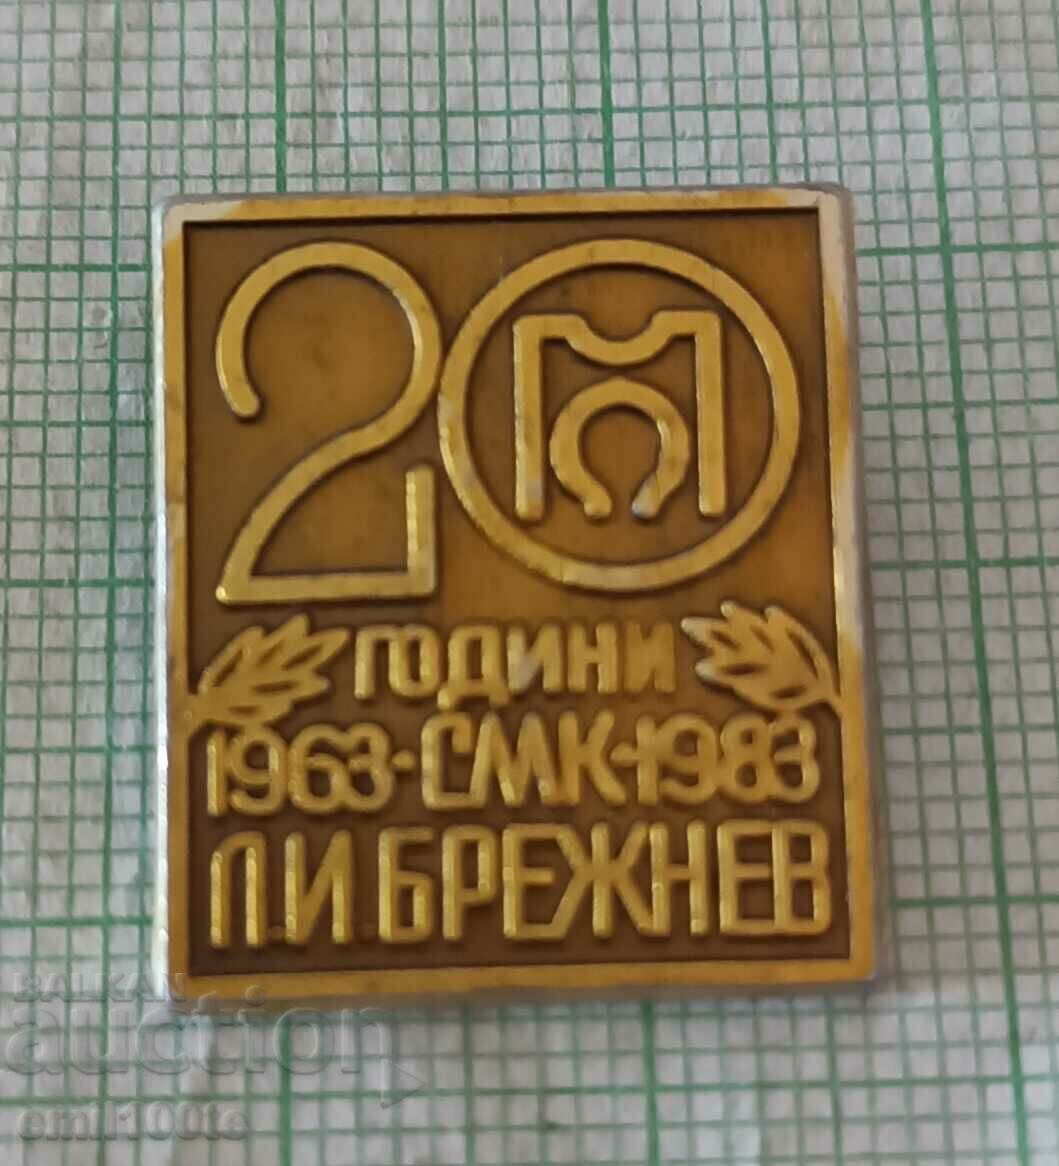 Σήμα - 20 χρόνια SMK L.I. Μπρέζνιεφ 1963 1983